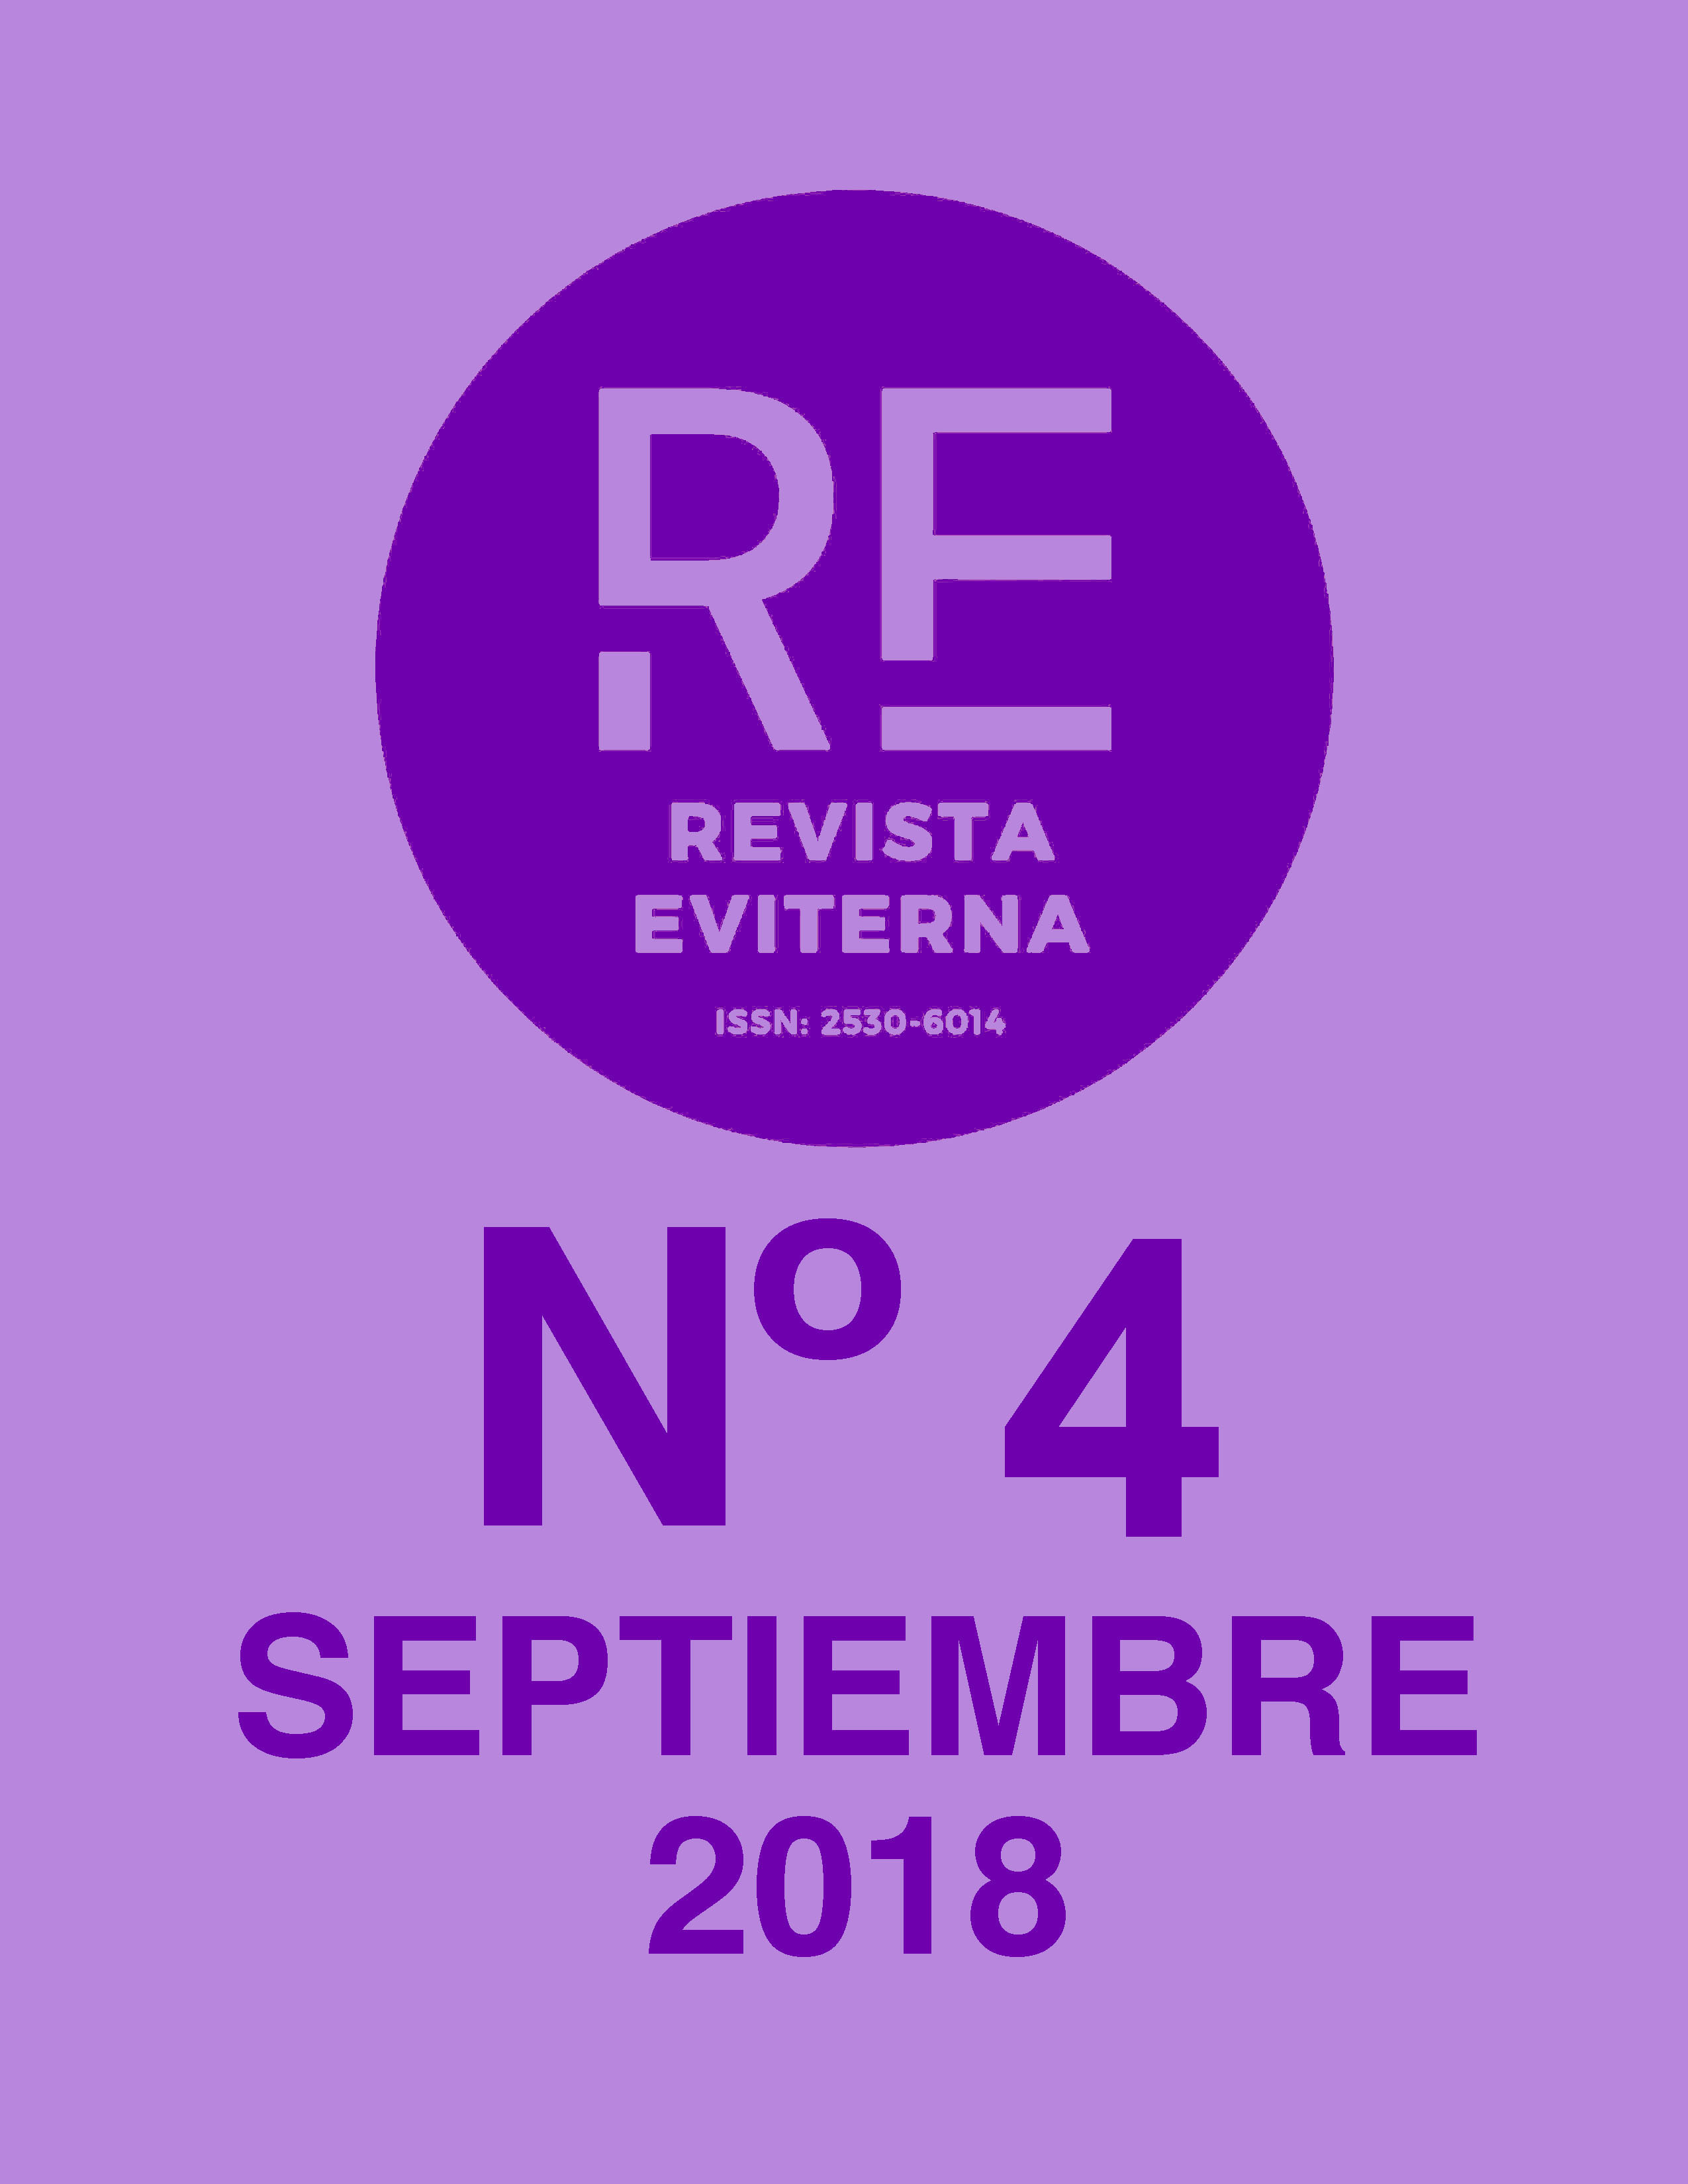 					Ver Núm. 4 (2018): Revista Eviterna Nº 4, septiembre 2018
				